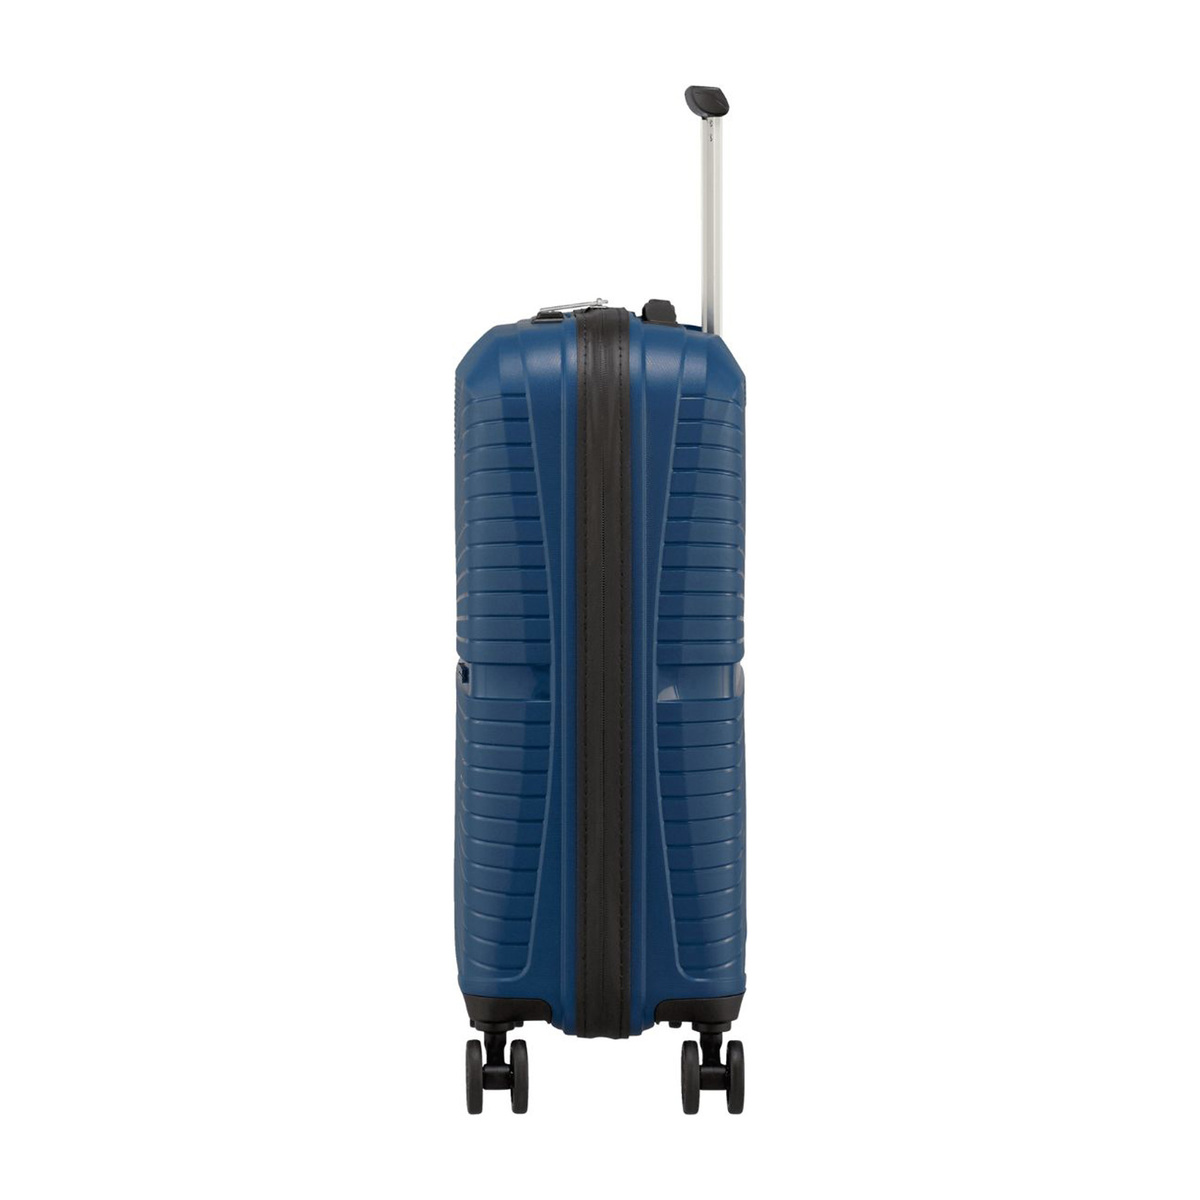 امريكان توريستر حقيبة سفر بعجلات صلبة إيركونيك سبينر مع قفل TSA، 67 سم، أزرق ميد نايت